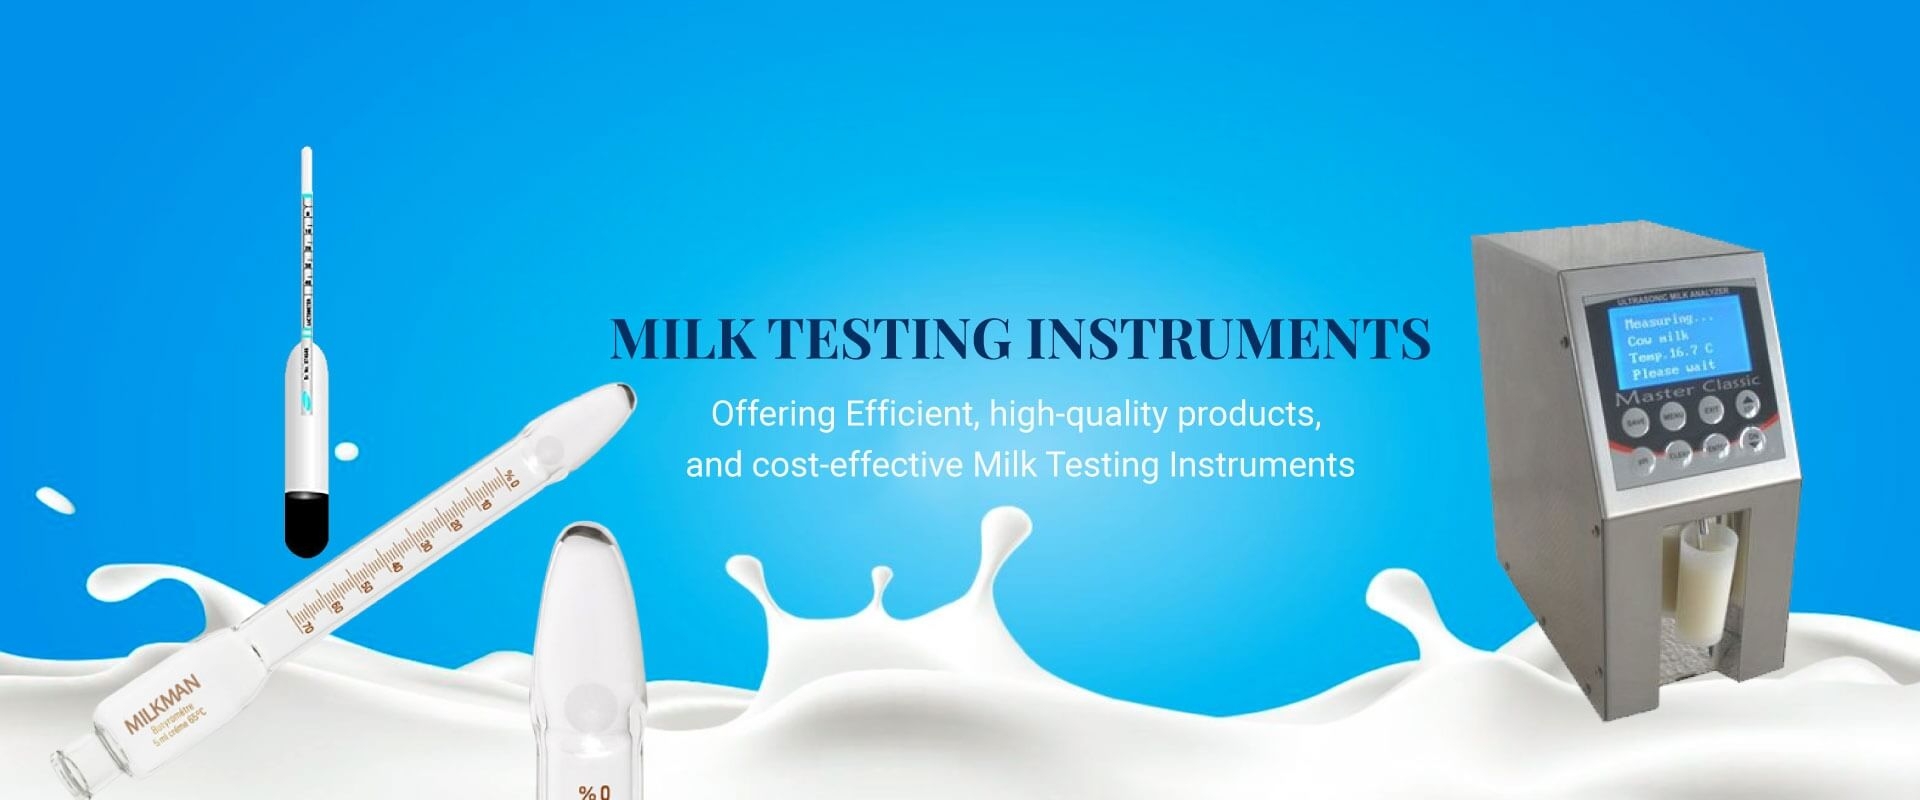 Milk Testing Instruments in Switzerland